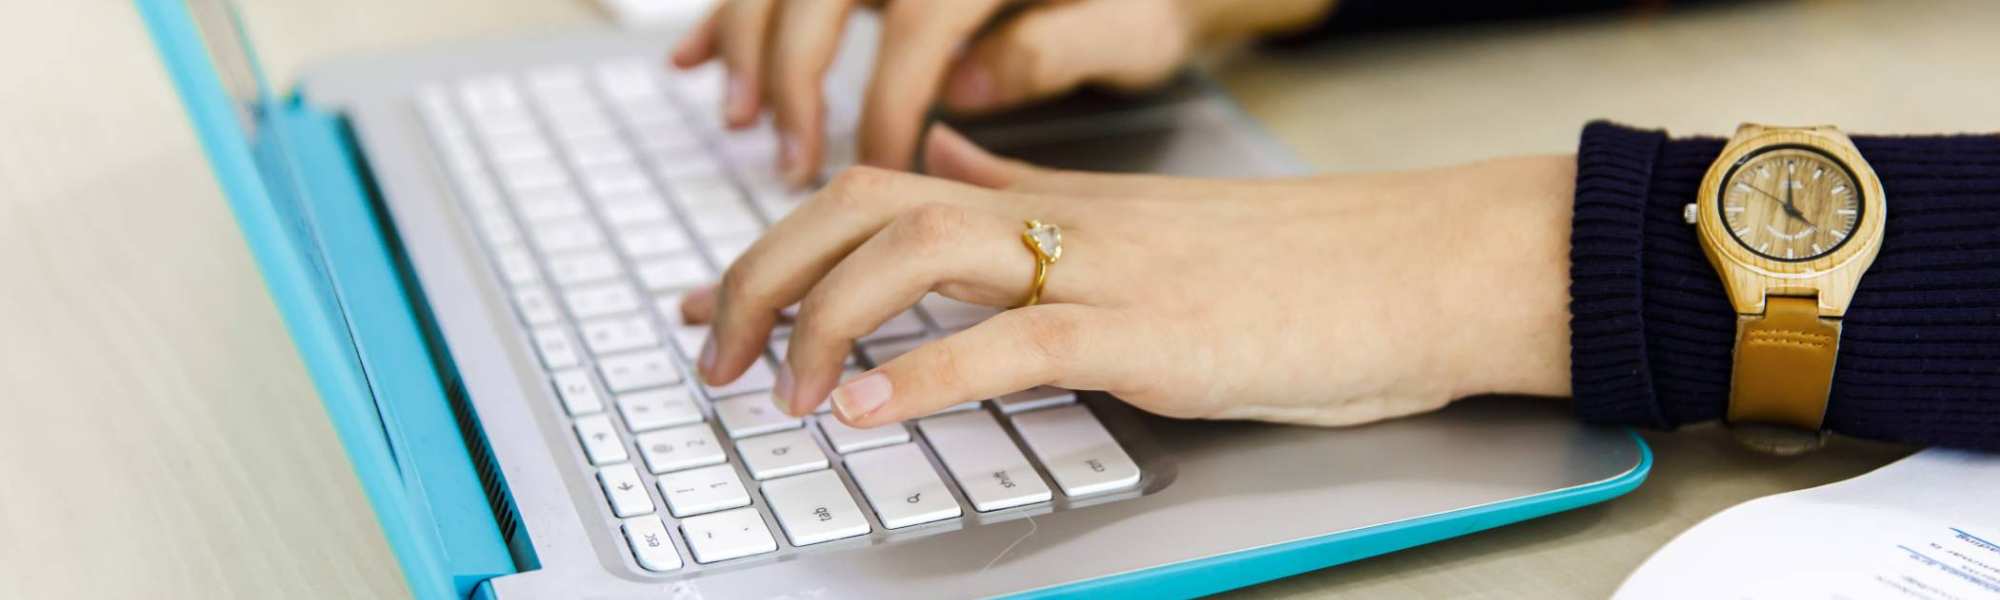 988b9032-0ce5-11ee-92f1-02565807075b Twee vrouwenhanden typen op het toetsenbord van haar laptop.